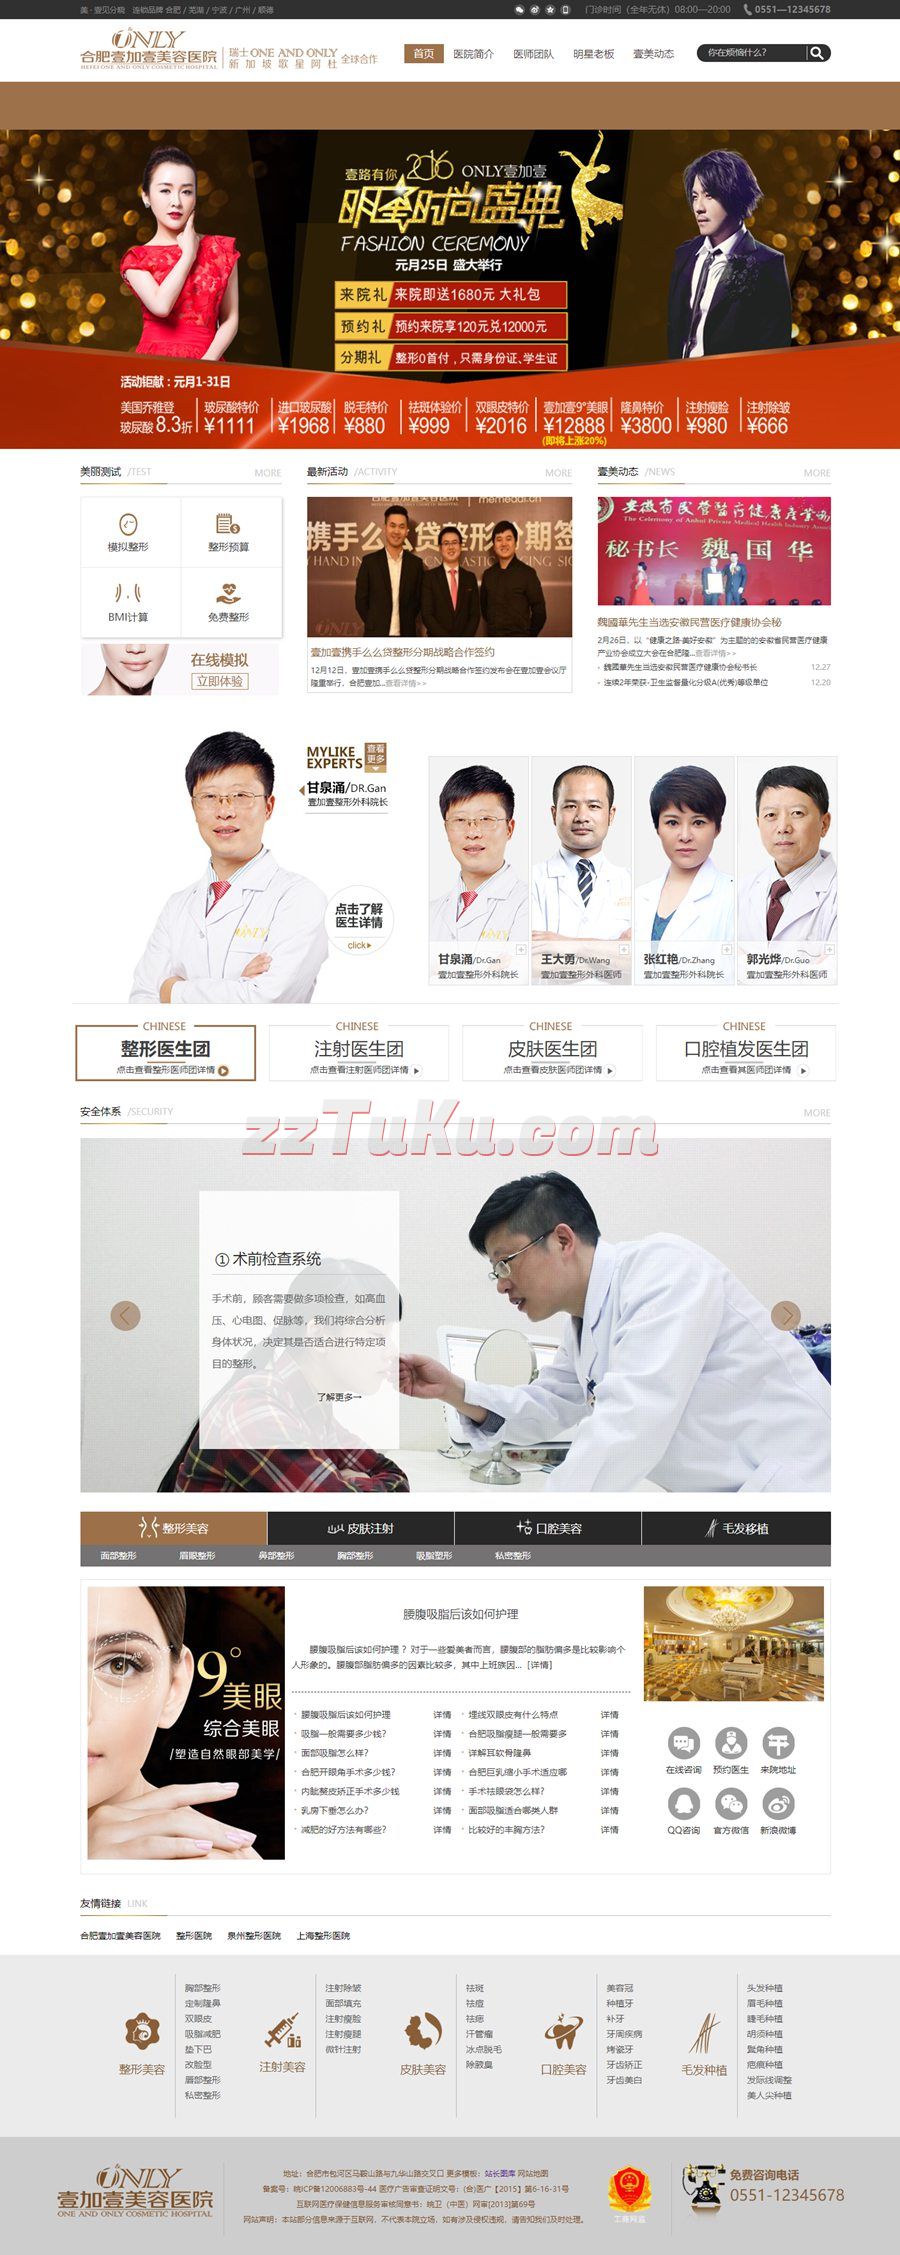 金黄色的美容医院企业网站html整站模板